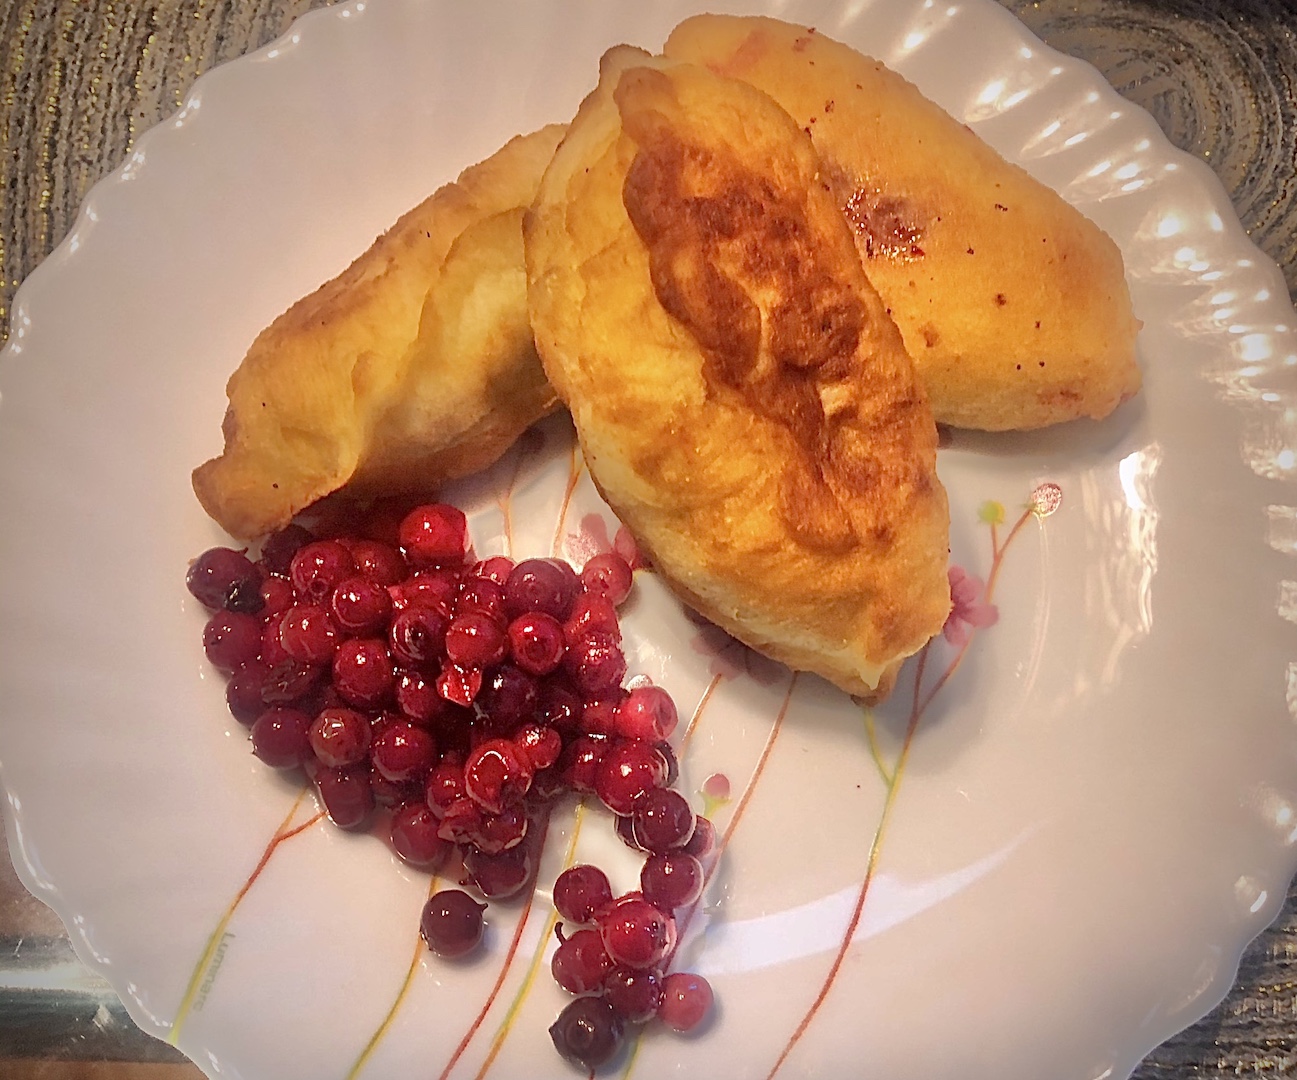 Fried Pirozhki or Piroshki Family Recipe. Russian Hand Pies with ...